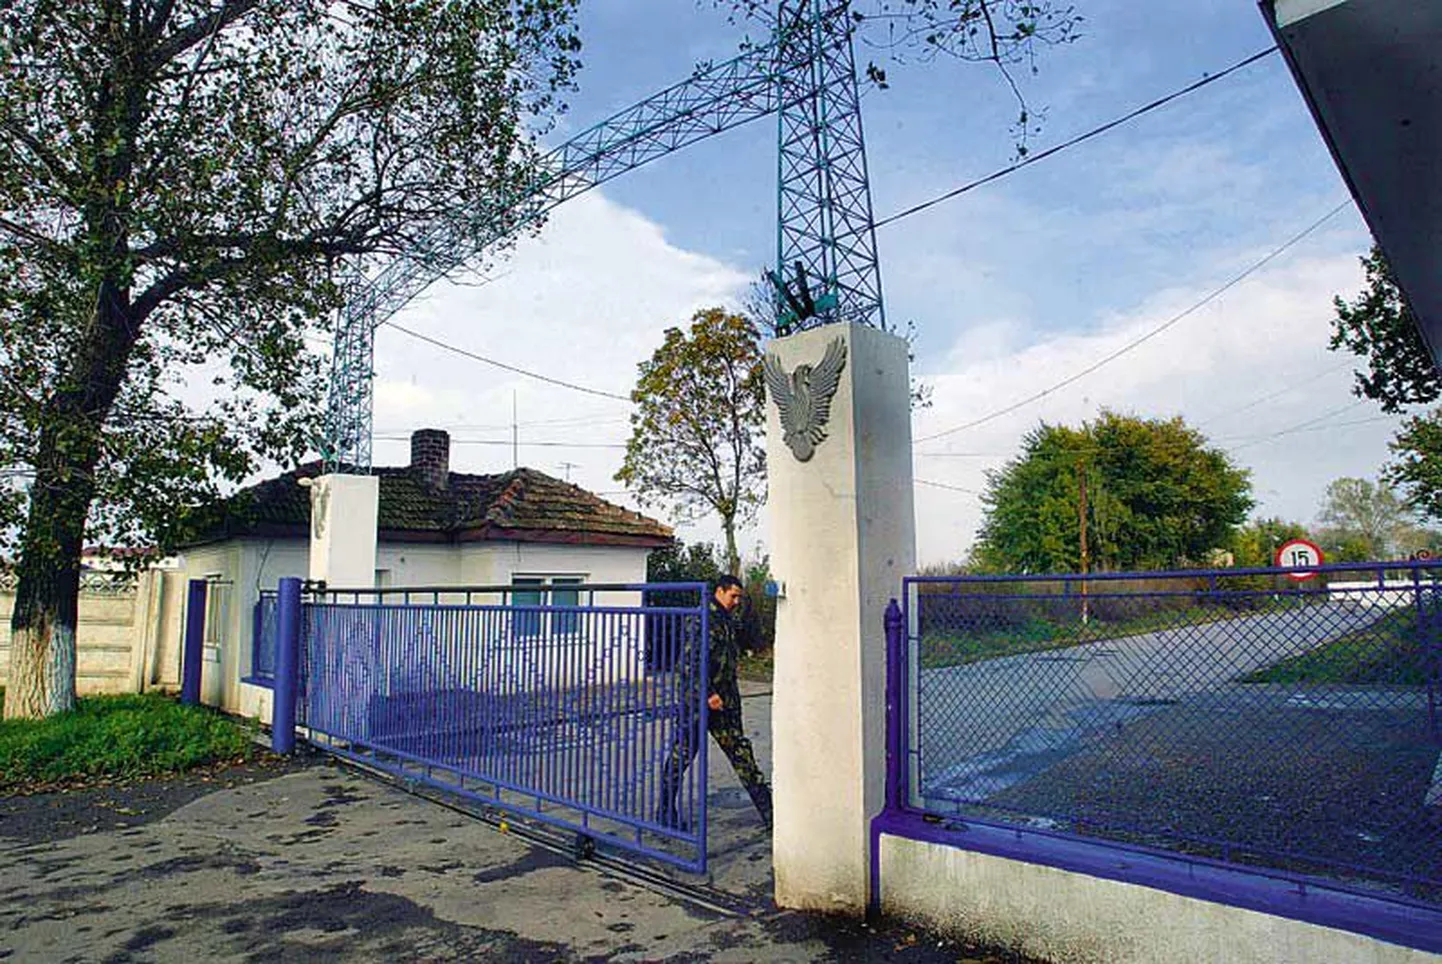 Sõdur sulgeb Rumeenias Mihhail Kogalniceanu küla lähedal asuva õhujõudude baasi nr 86 väravat. Inimõiguslaste sõnul võib just selles baasis olla üks USA Luure Keskagentuuri CIA salavangla.